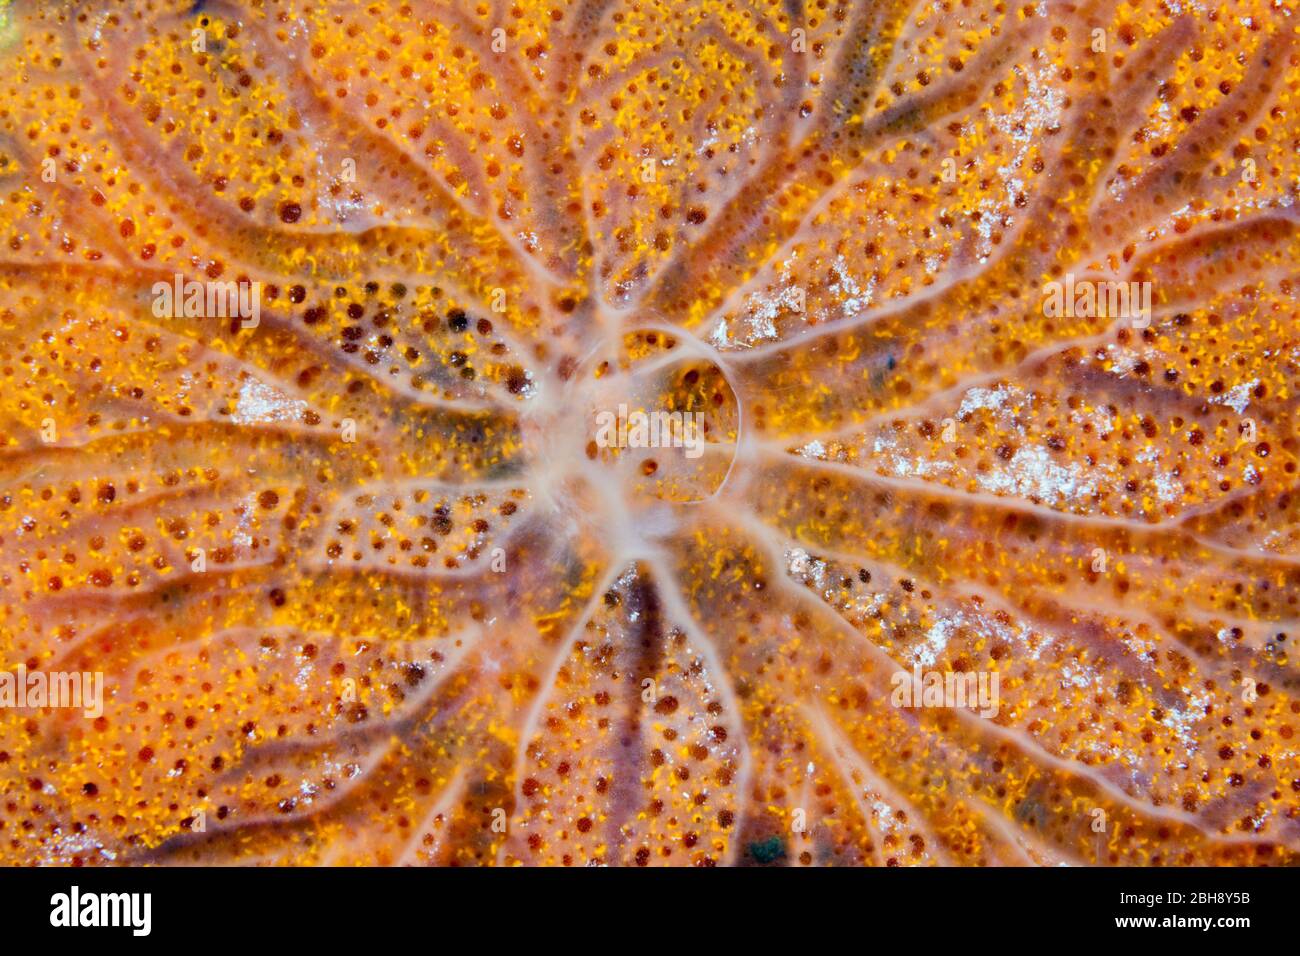 Sea Sponge Detail, Porifera, Giftun Island, Red Sea, Egypt Stock Photo